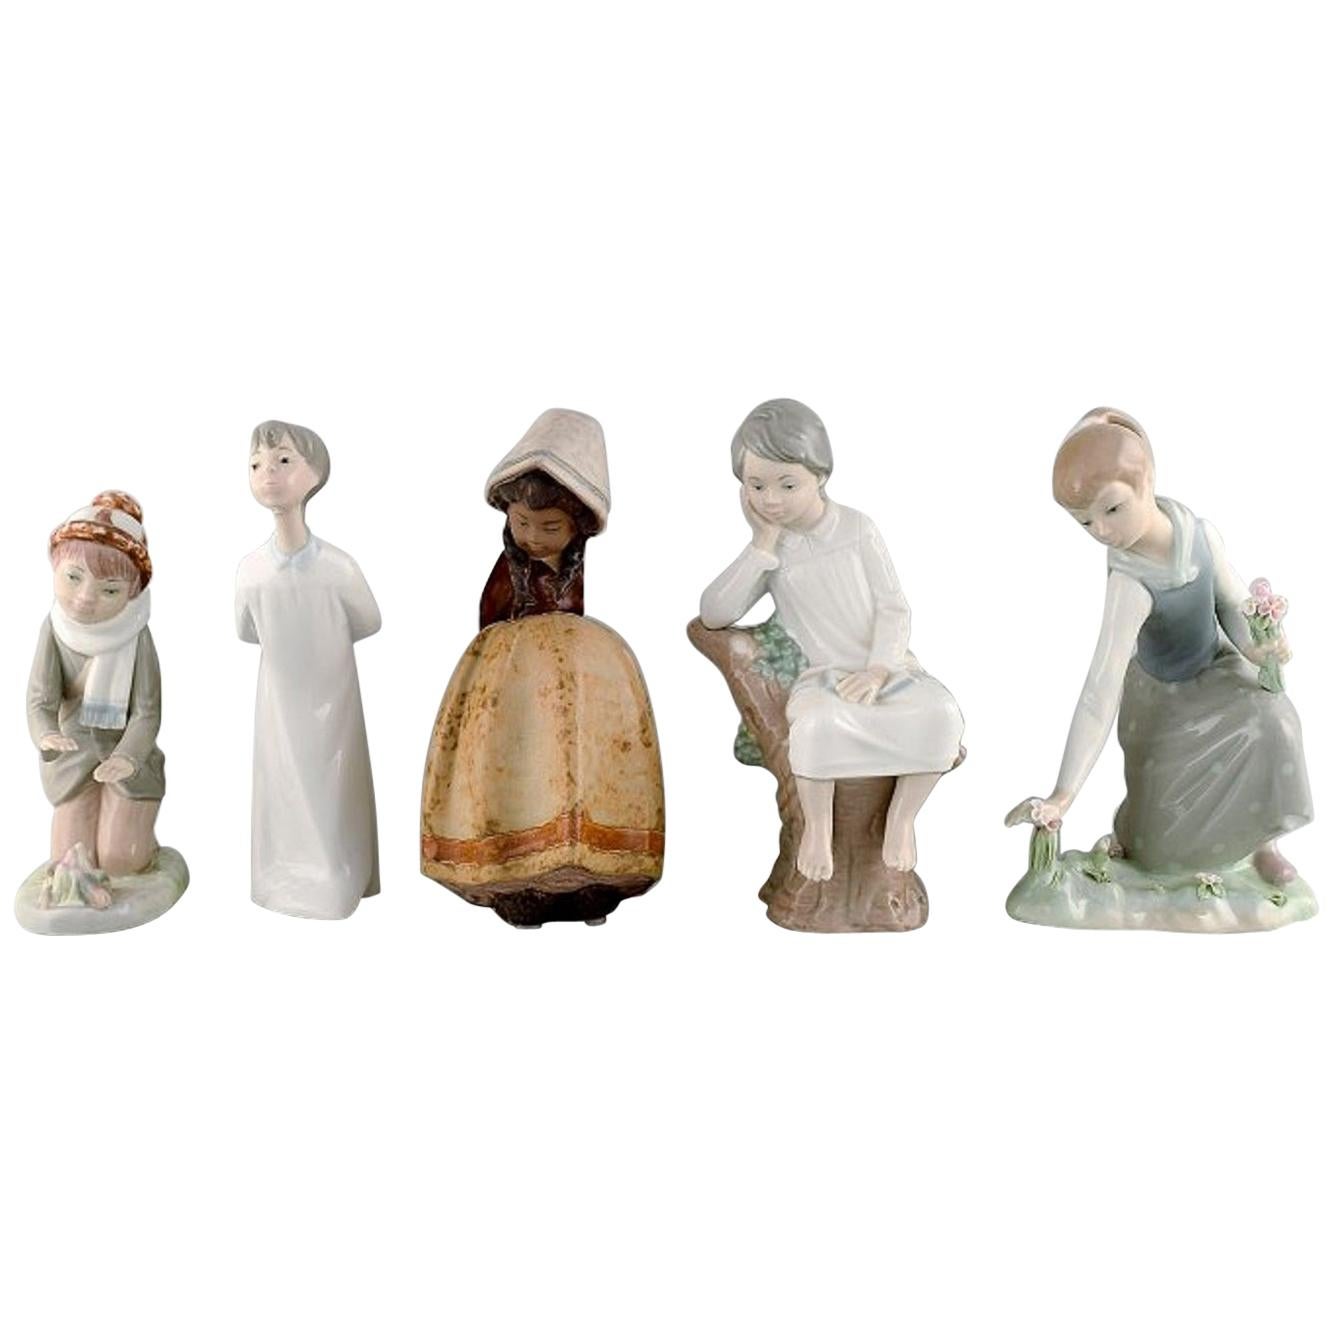 Lladro, Nao und Zaphir, Spanien, fünf Porzellanfiguren von Kindern, 1980er-1990er Jahre